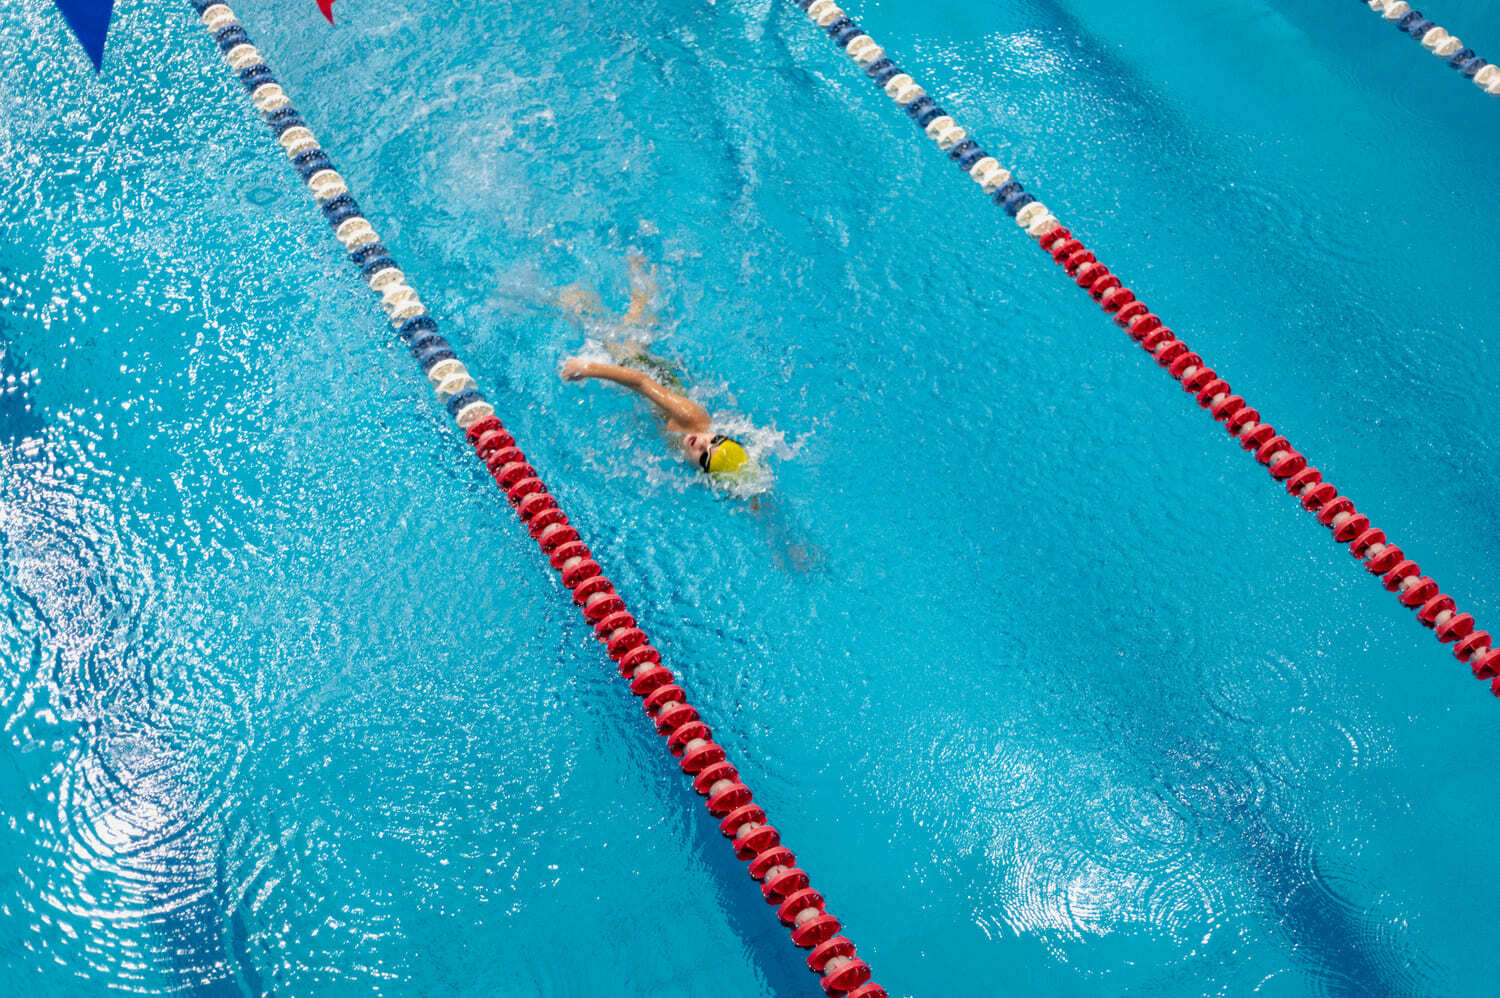 Обучение плаванию детей от 3 до 15 лет в бассейне в Москве, получение юношеского разряда, спортивное плавание для детей